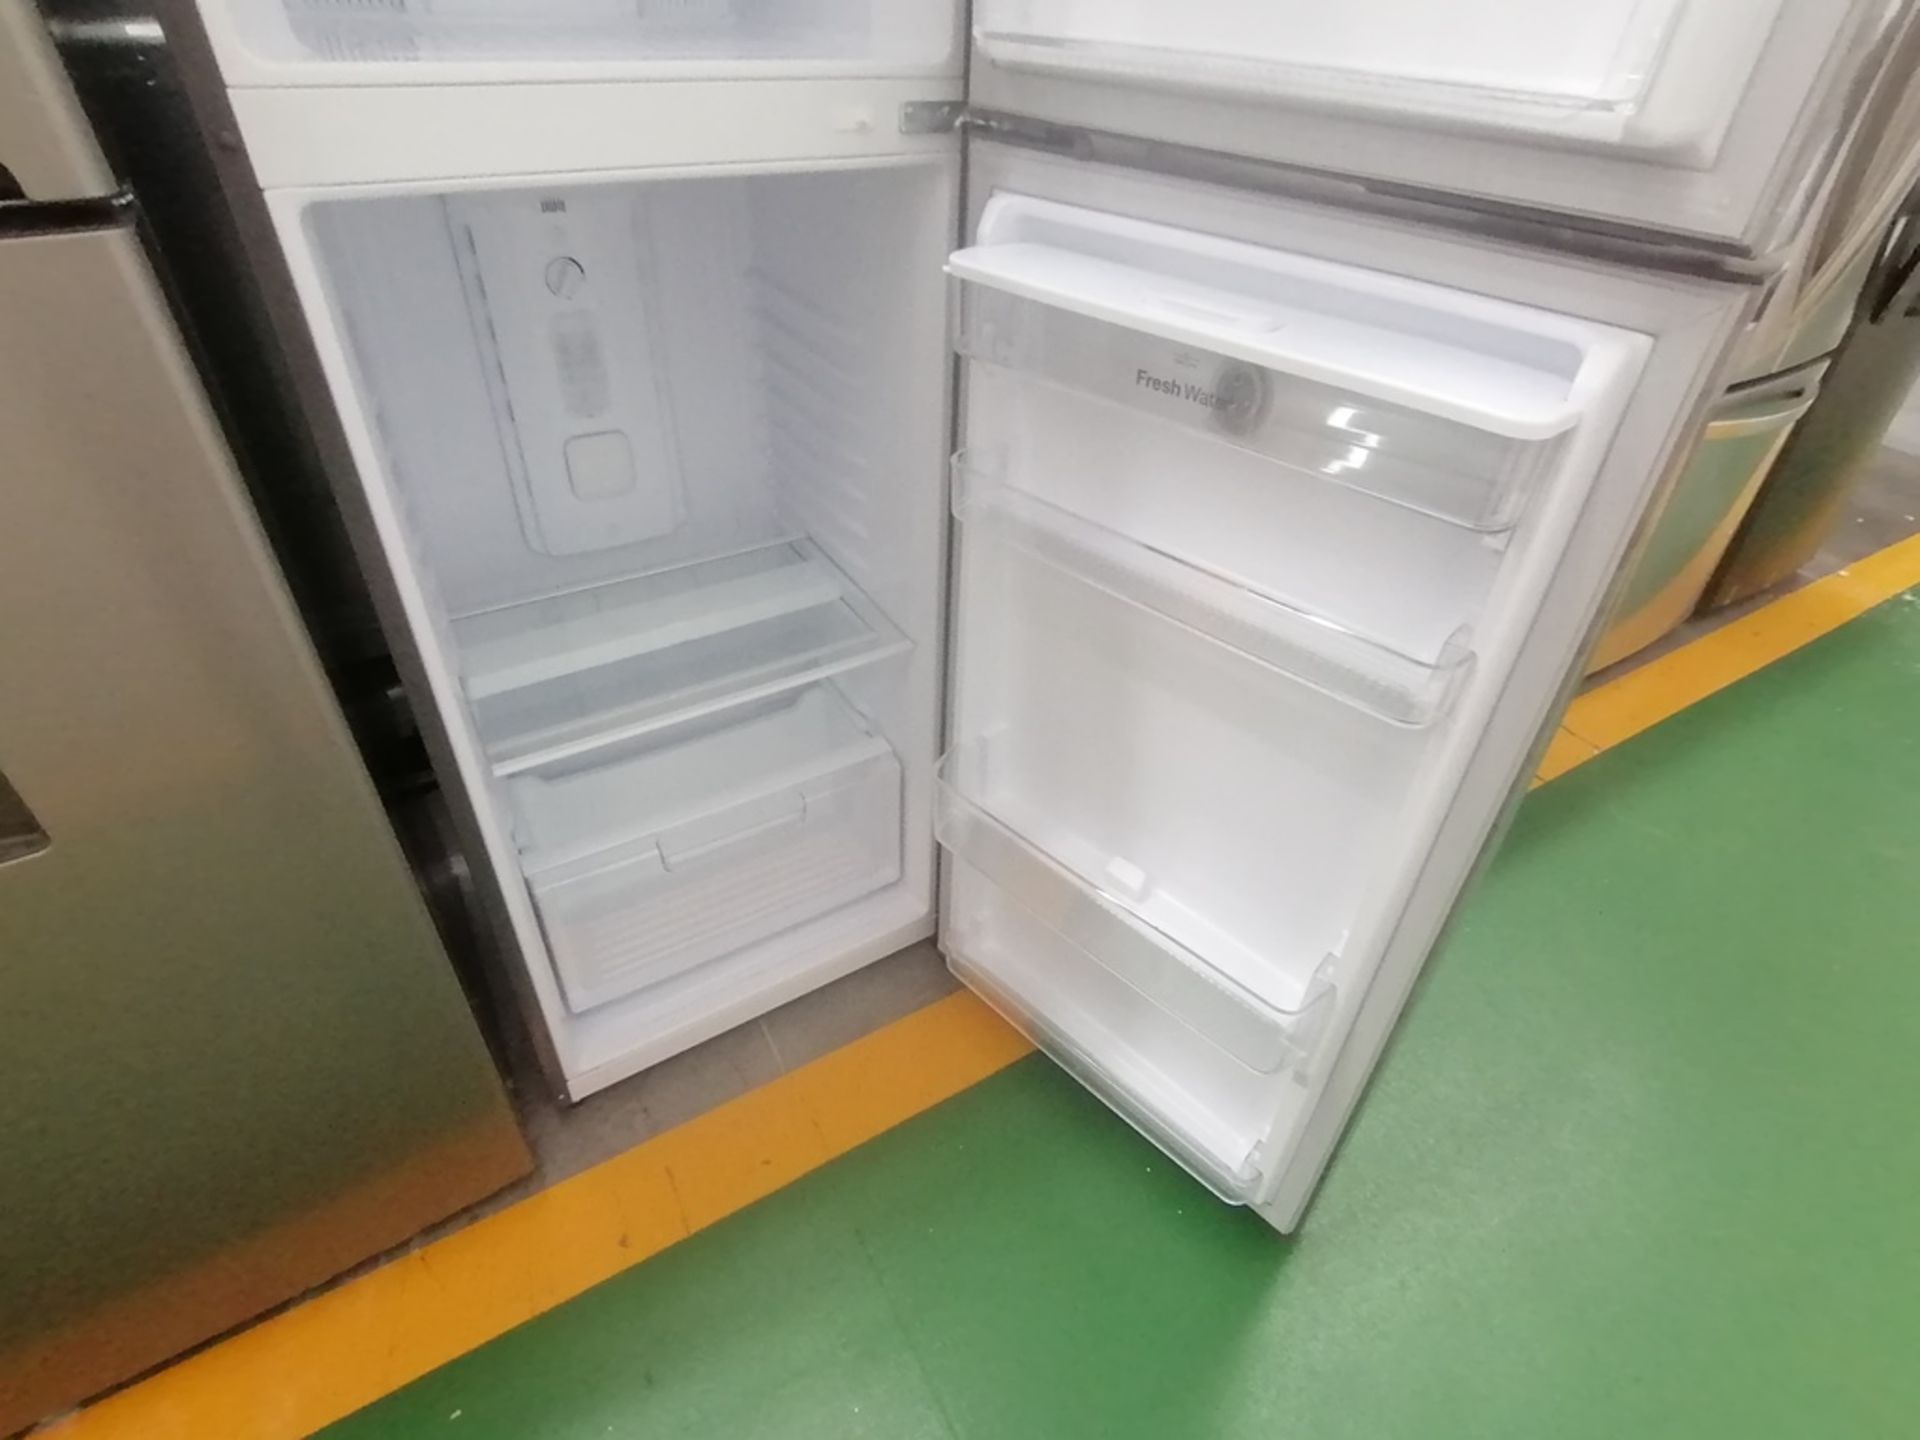 Lote de 2 refrigeradores incluye: 1 Refrigerador con dispensador de agua, Marca Winia, Modelo DFR40 - Image 10 of 16